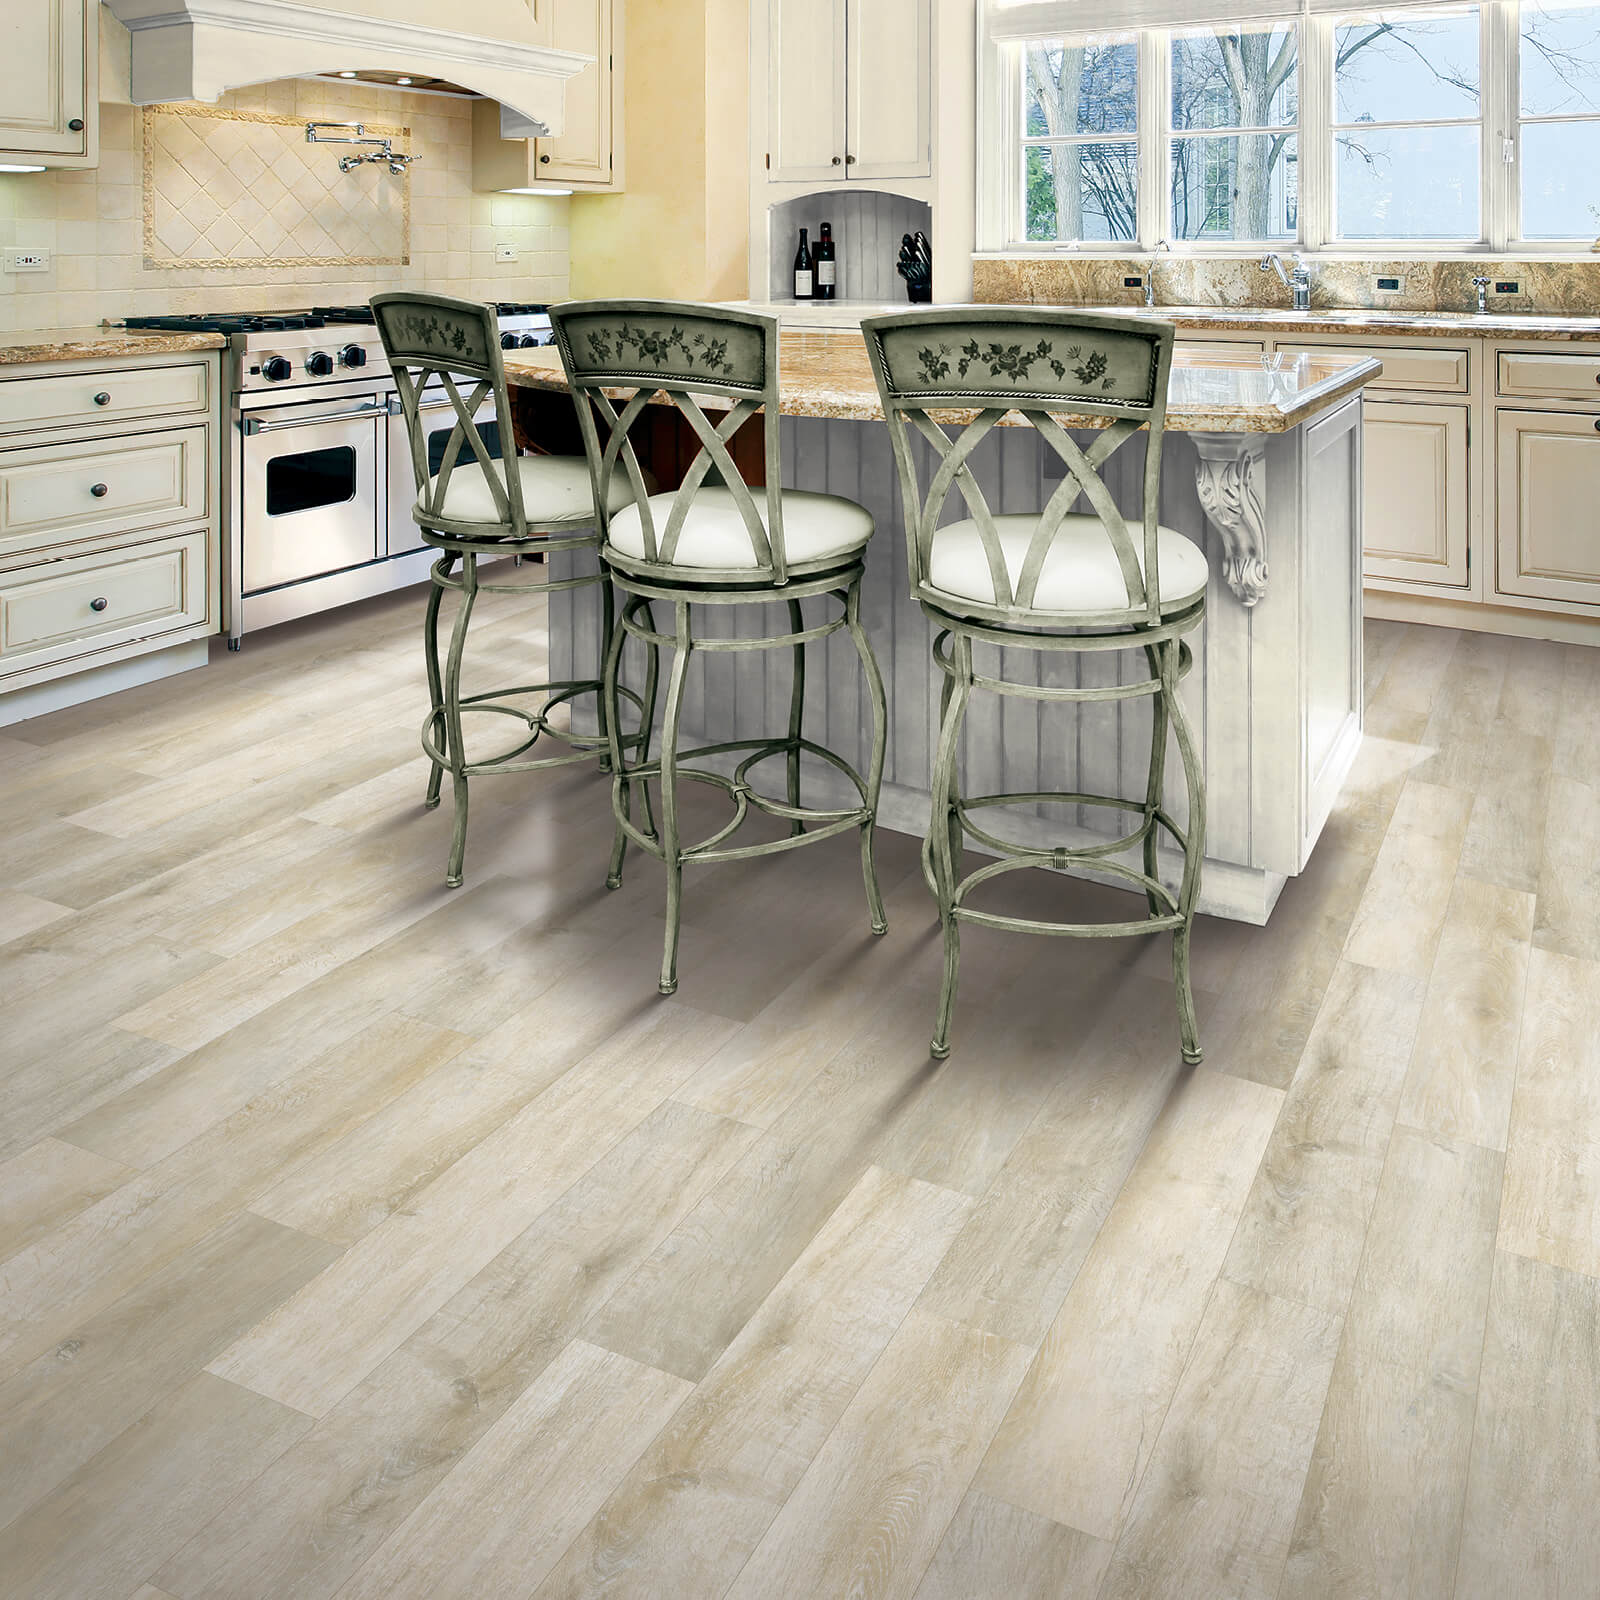 Hardwood flooring in kitchen | Rockwall Floor and Paint